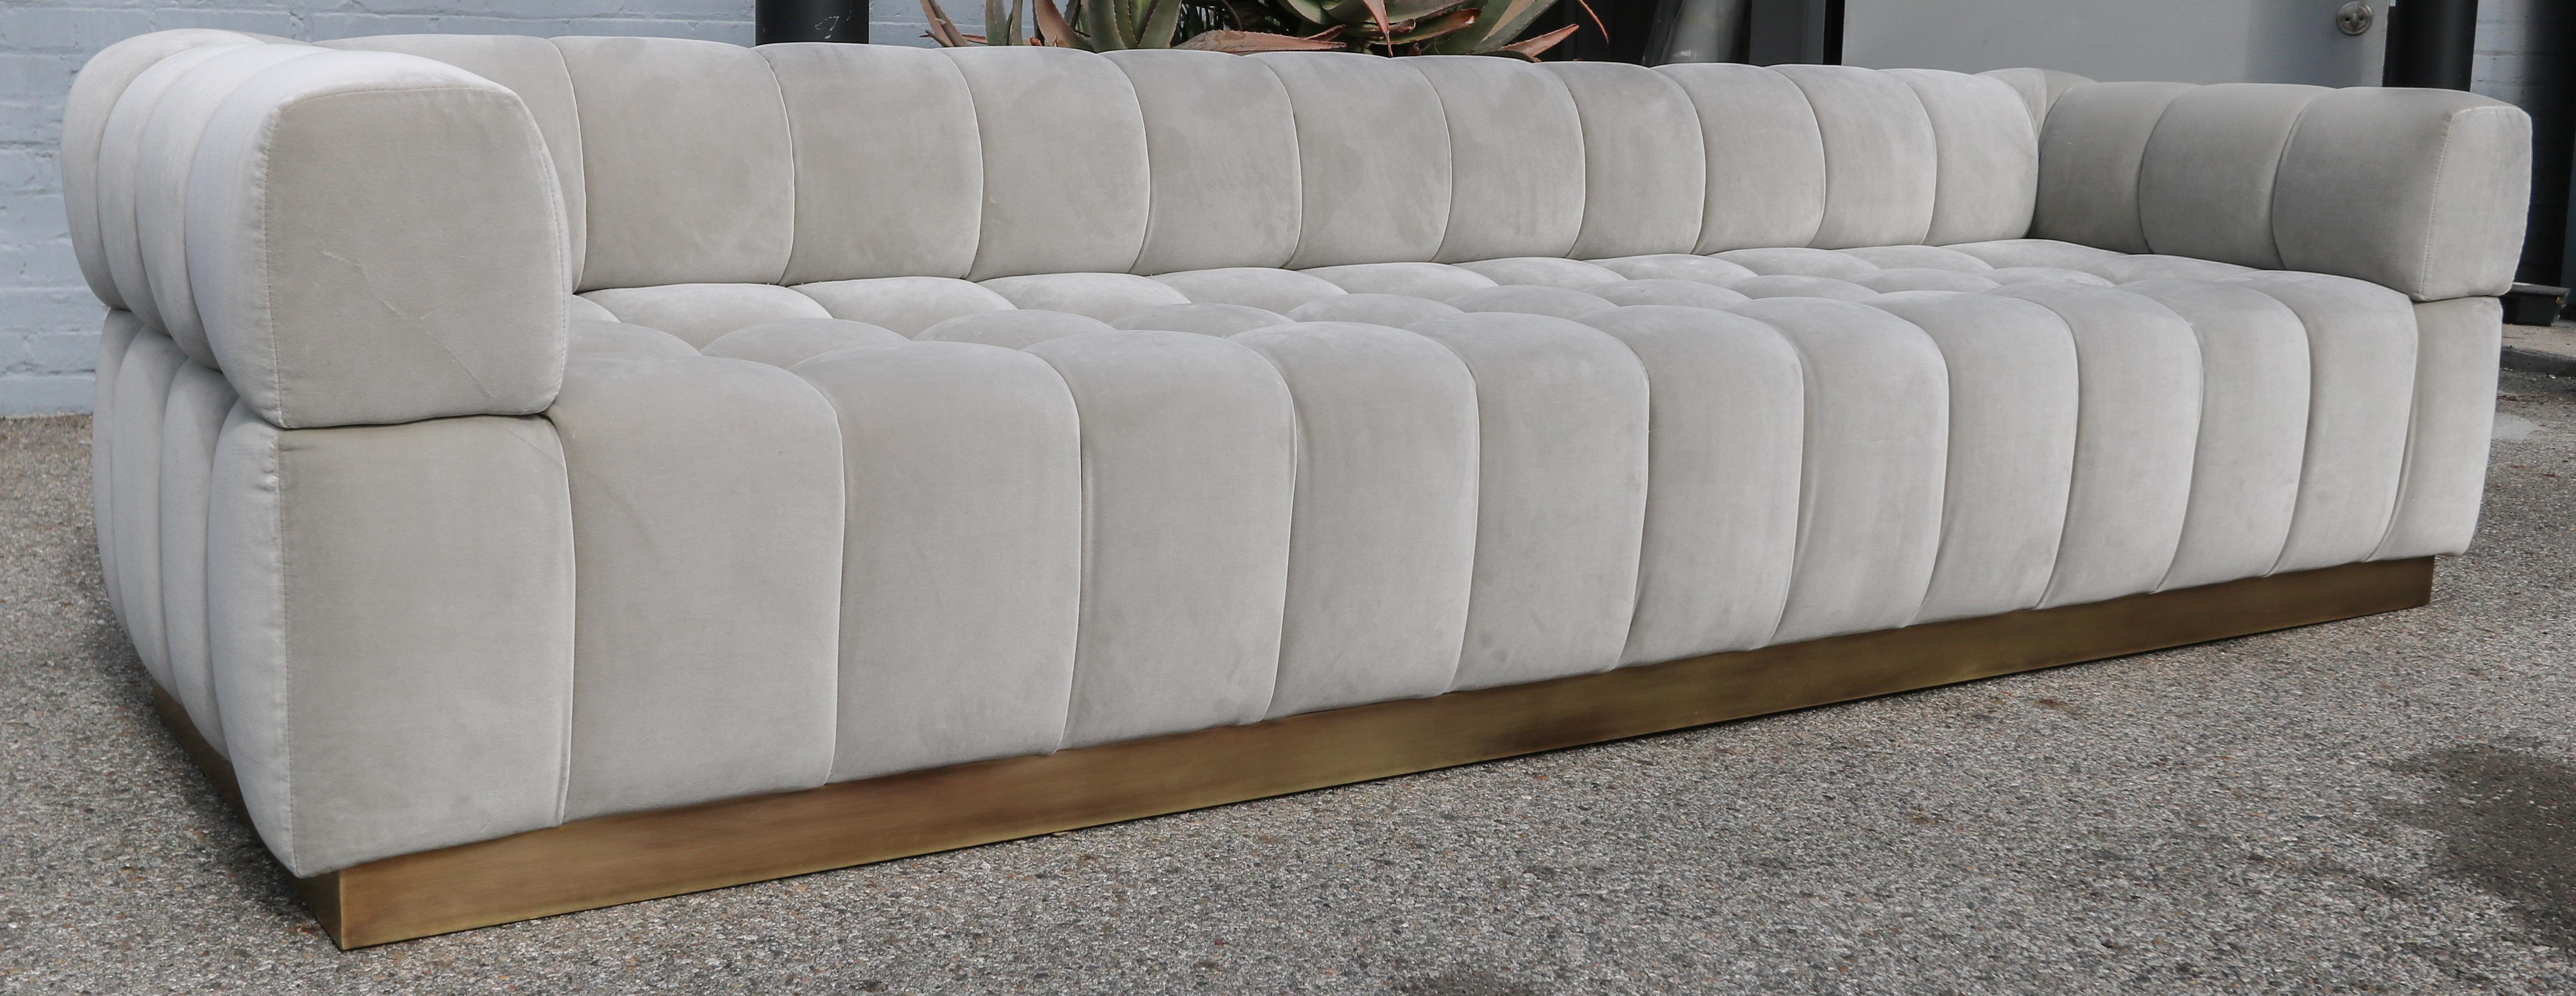 handmade tufted sofas